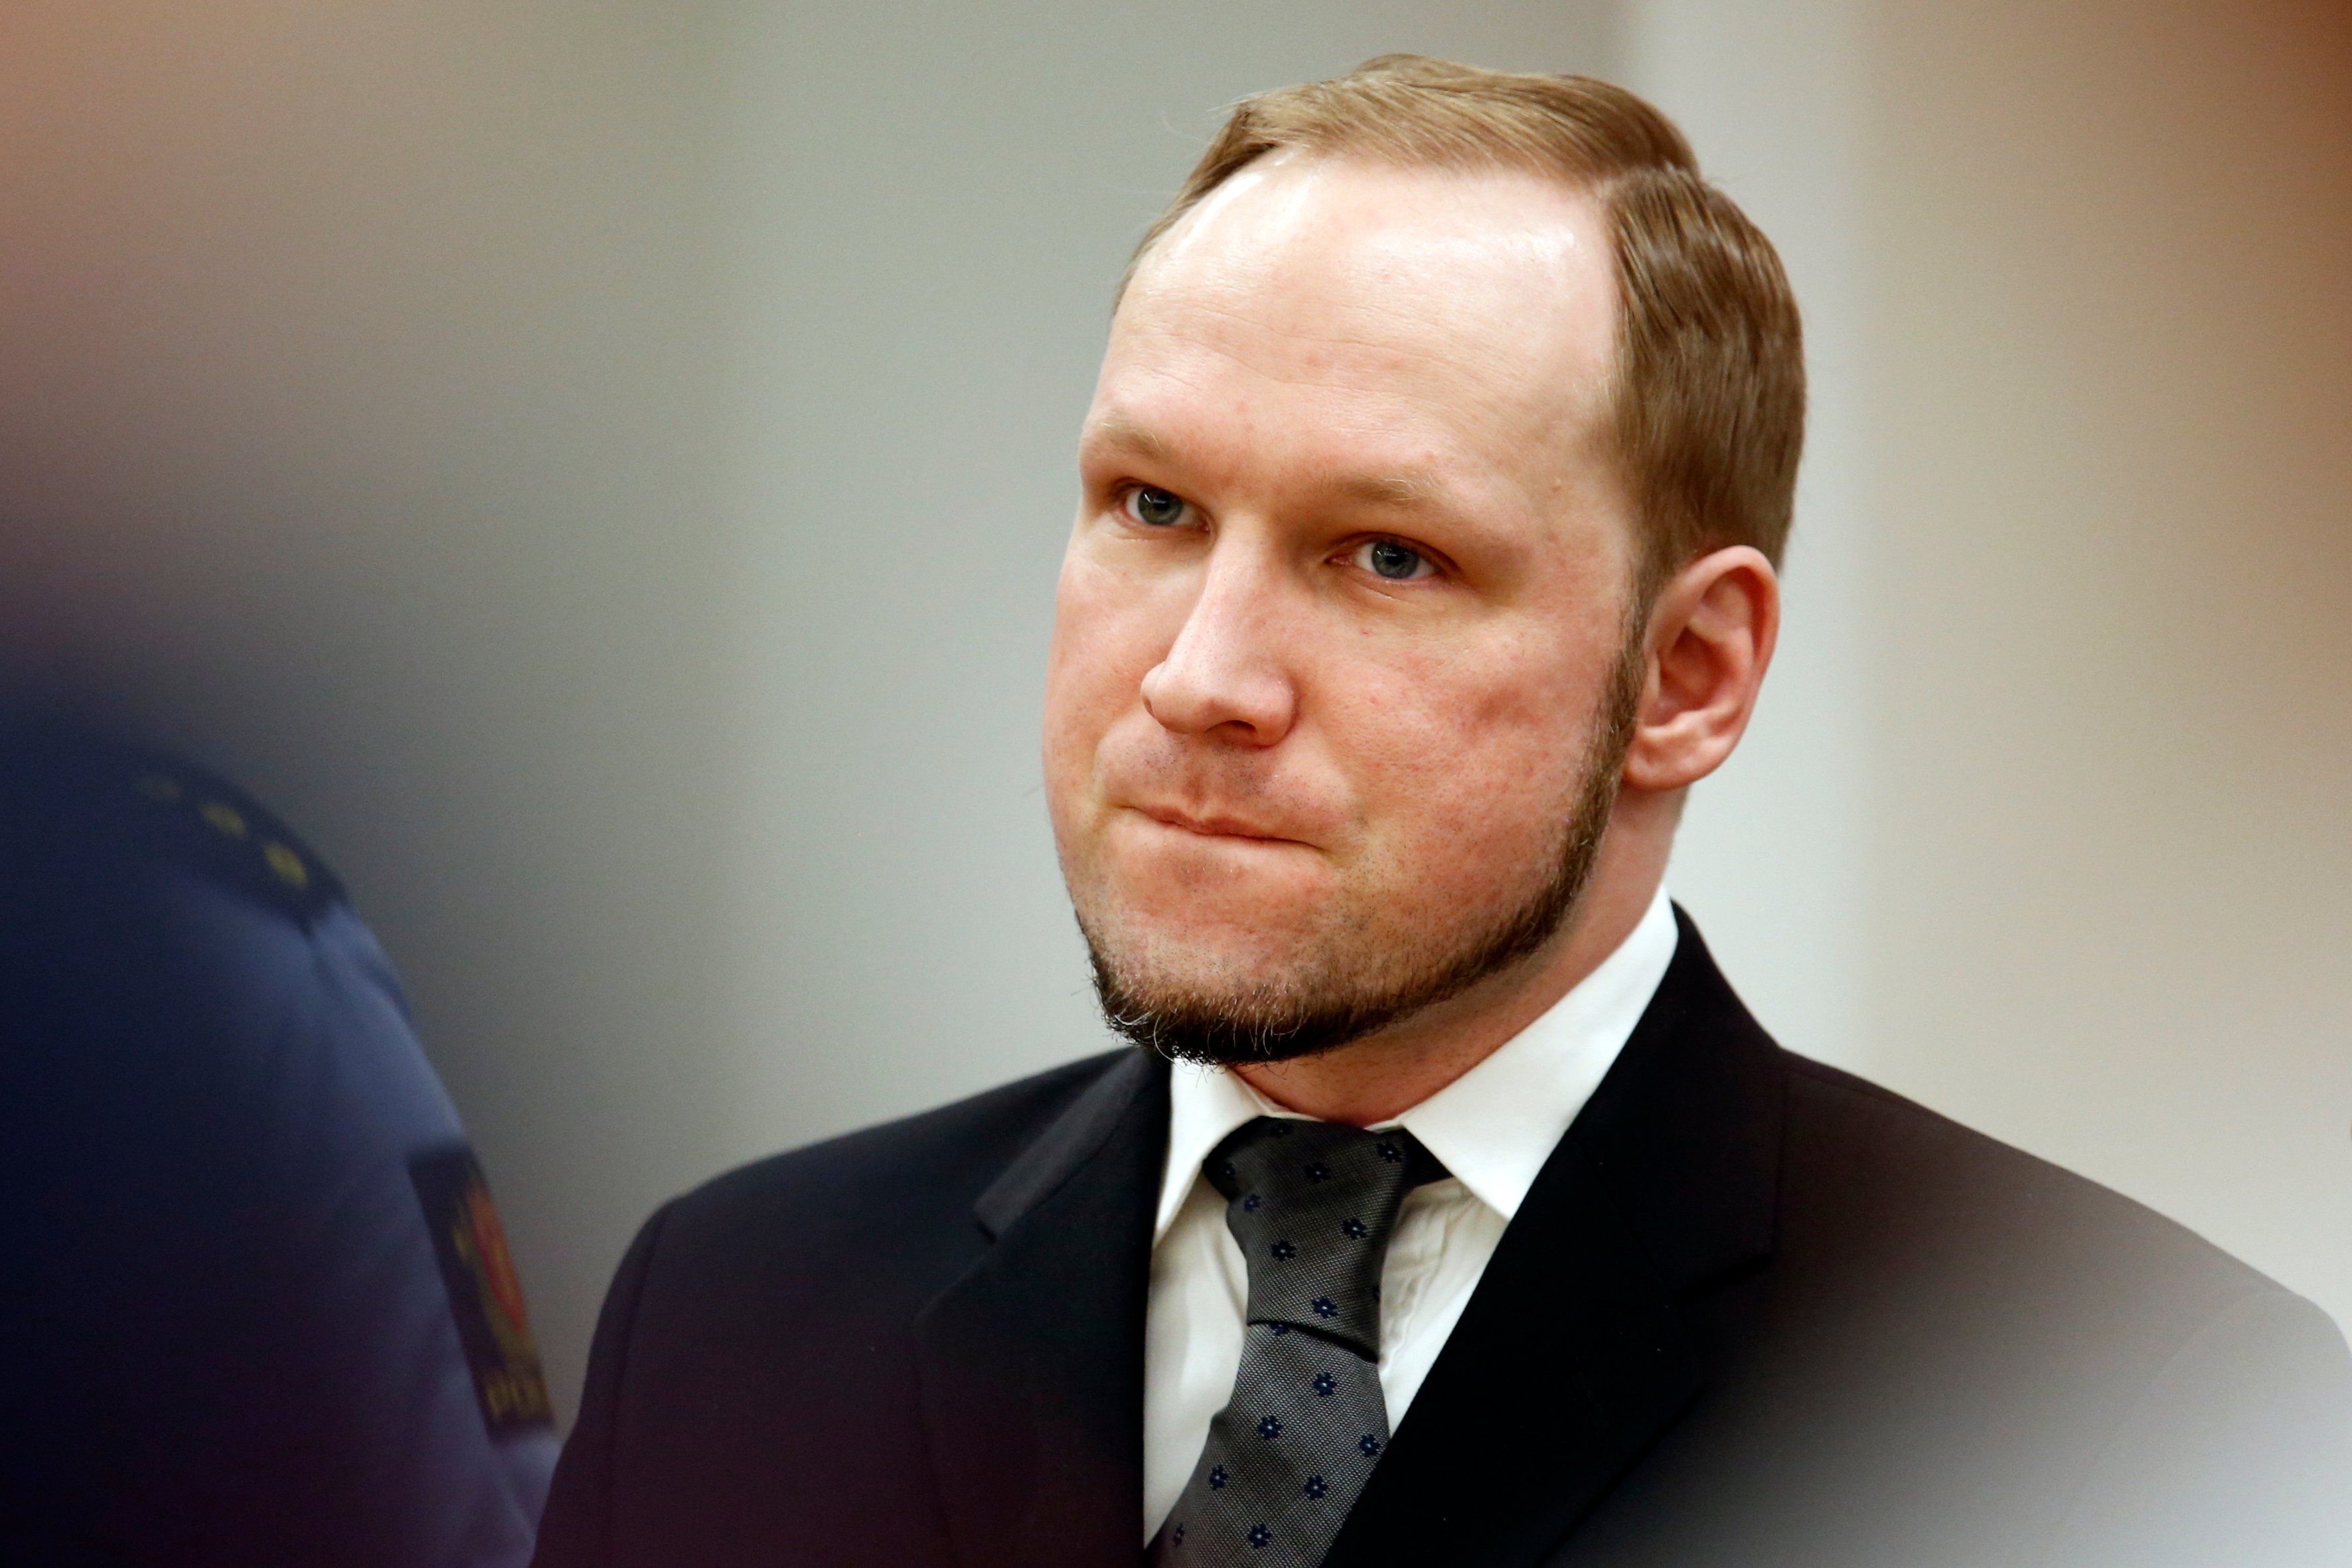 Anders Behring Breivik, Norge, Utøya, Hotad